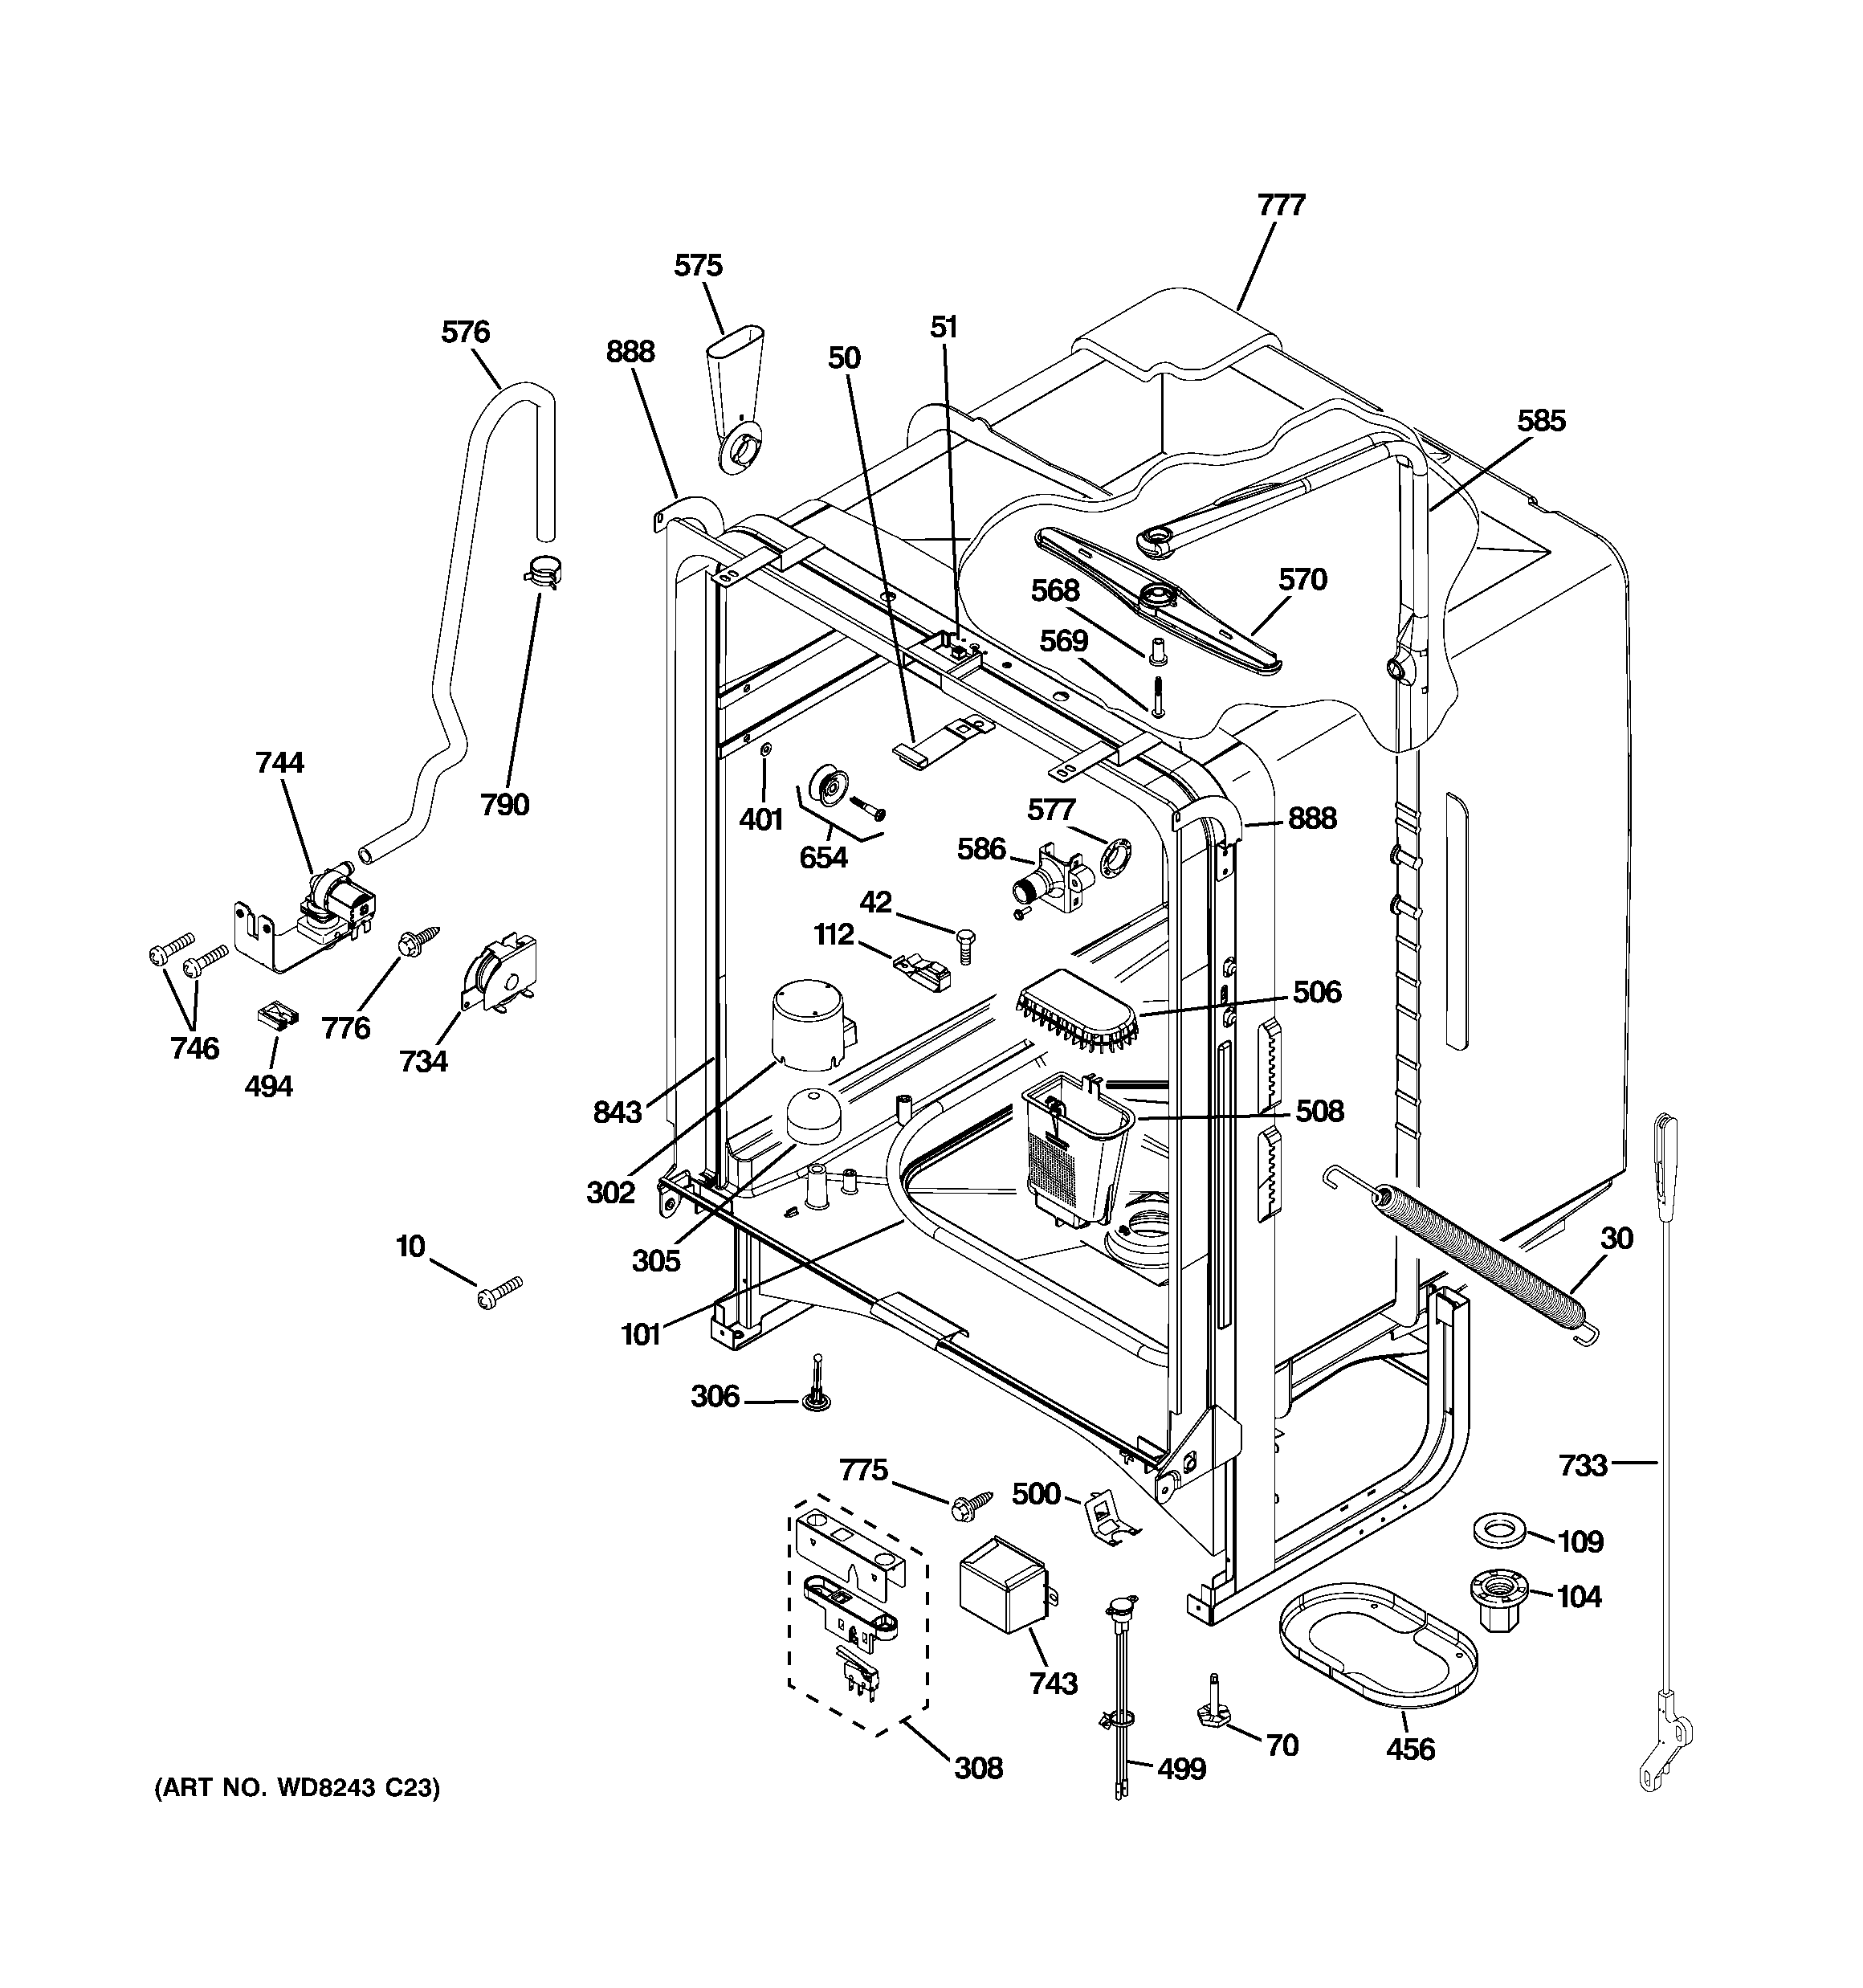 30 Ge Dishwasher Parts Diagram - Free Wiring Diagram Source